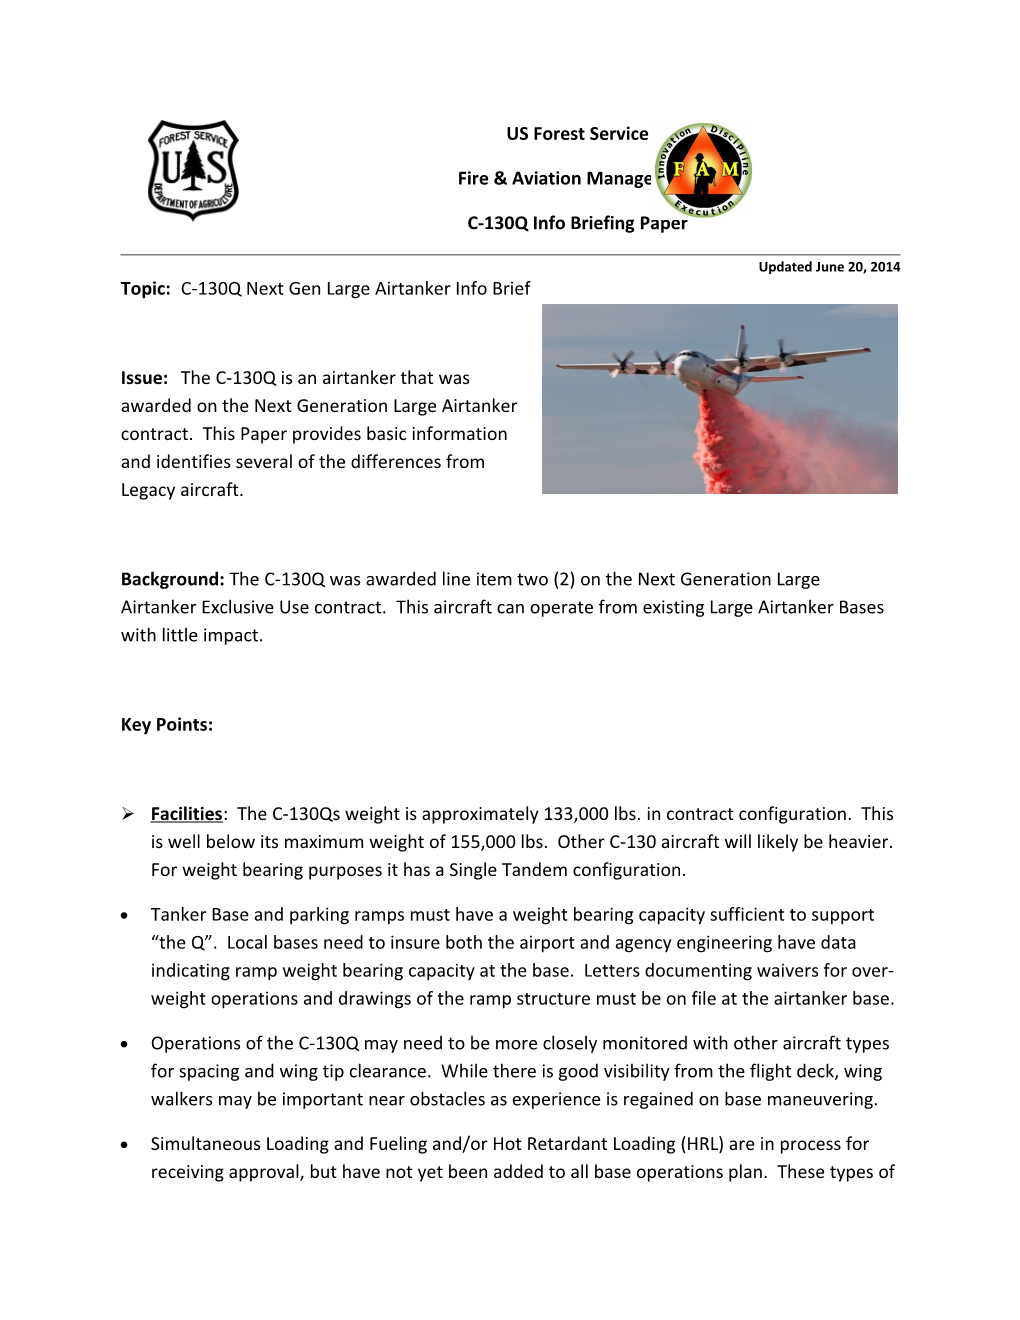 Fire & Aviation Management